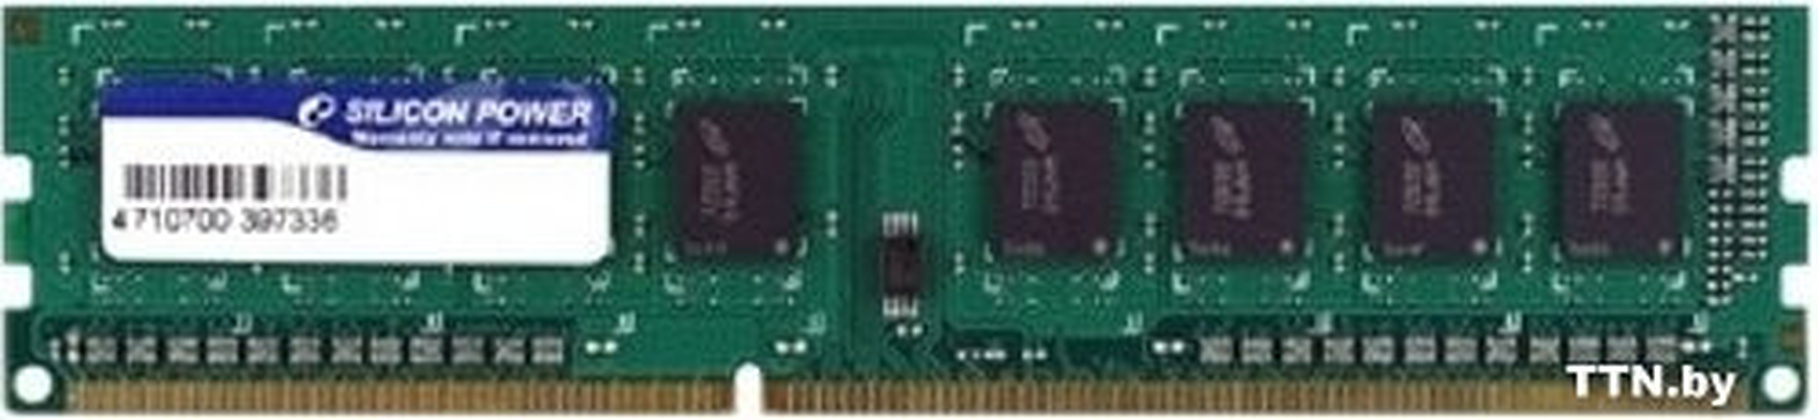 ОЗУ Silicon Power SP004GBLTU160N02 DDR3 4 Гб (1x4 Гб)